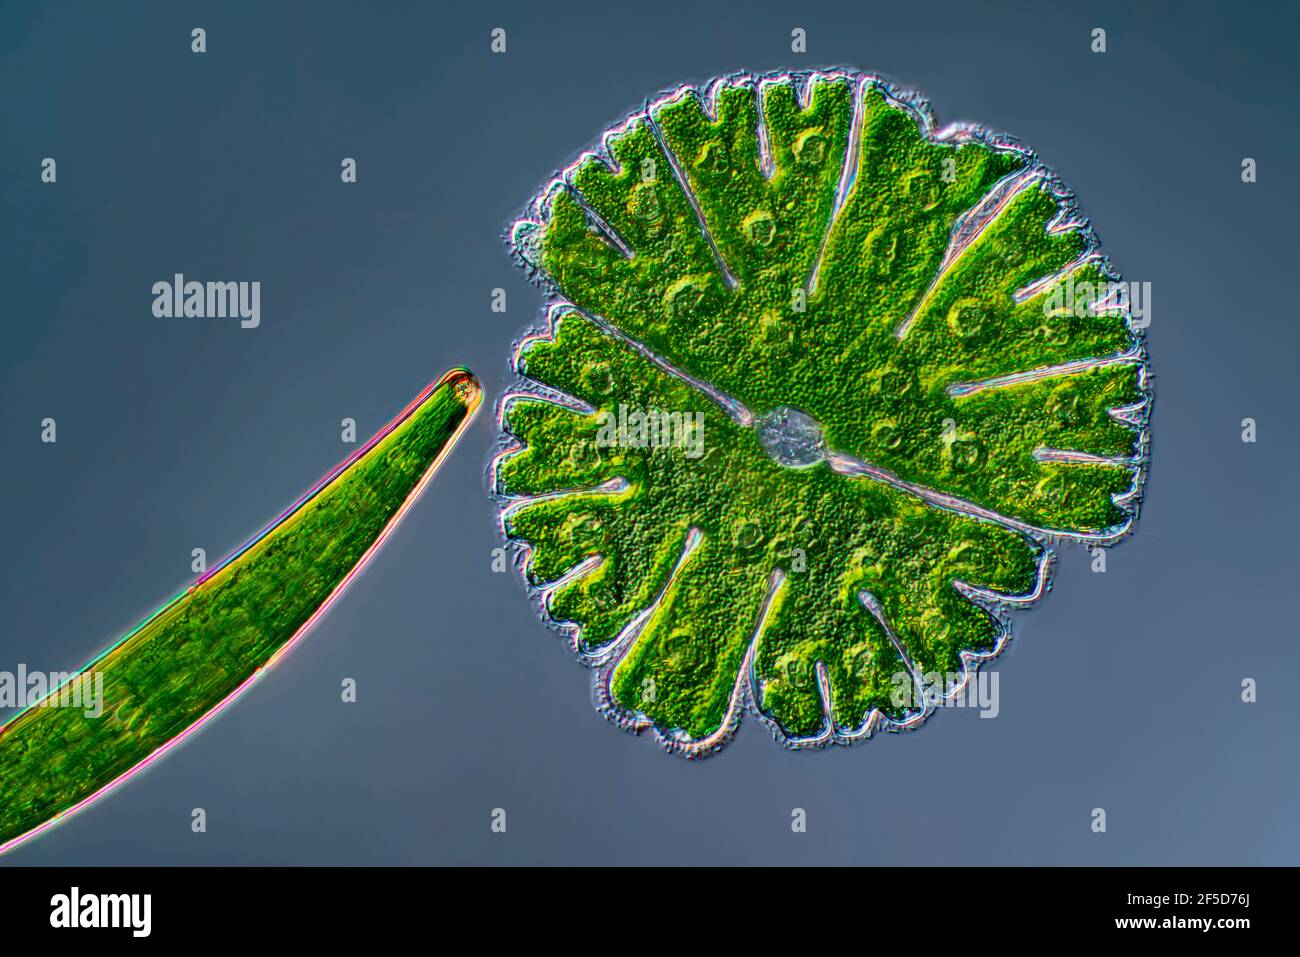 Algue verte (Micrasterias rotata), avec Clostridium, image de contraste d'interférence différentielle, grossissement x100 par rapport à 35 mm, Allemagne Banque D'Images